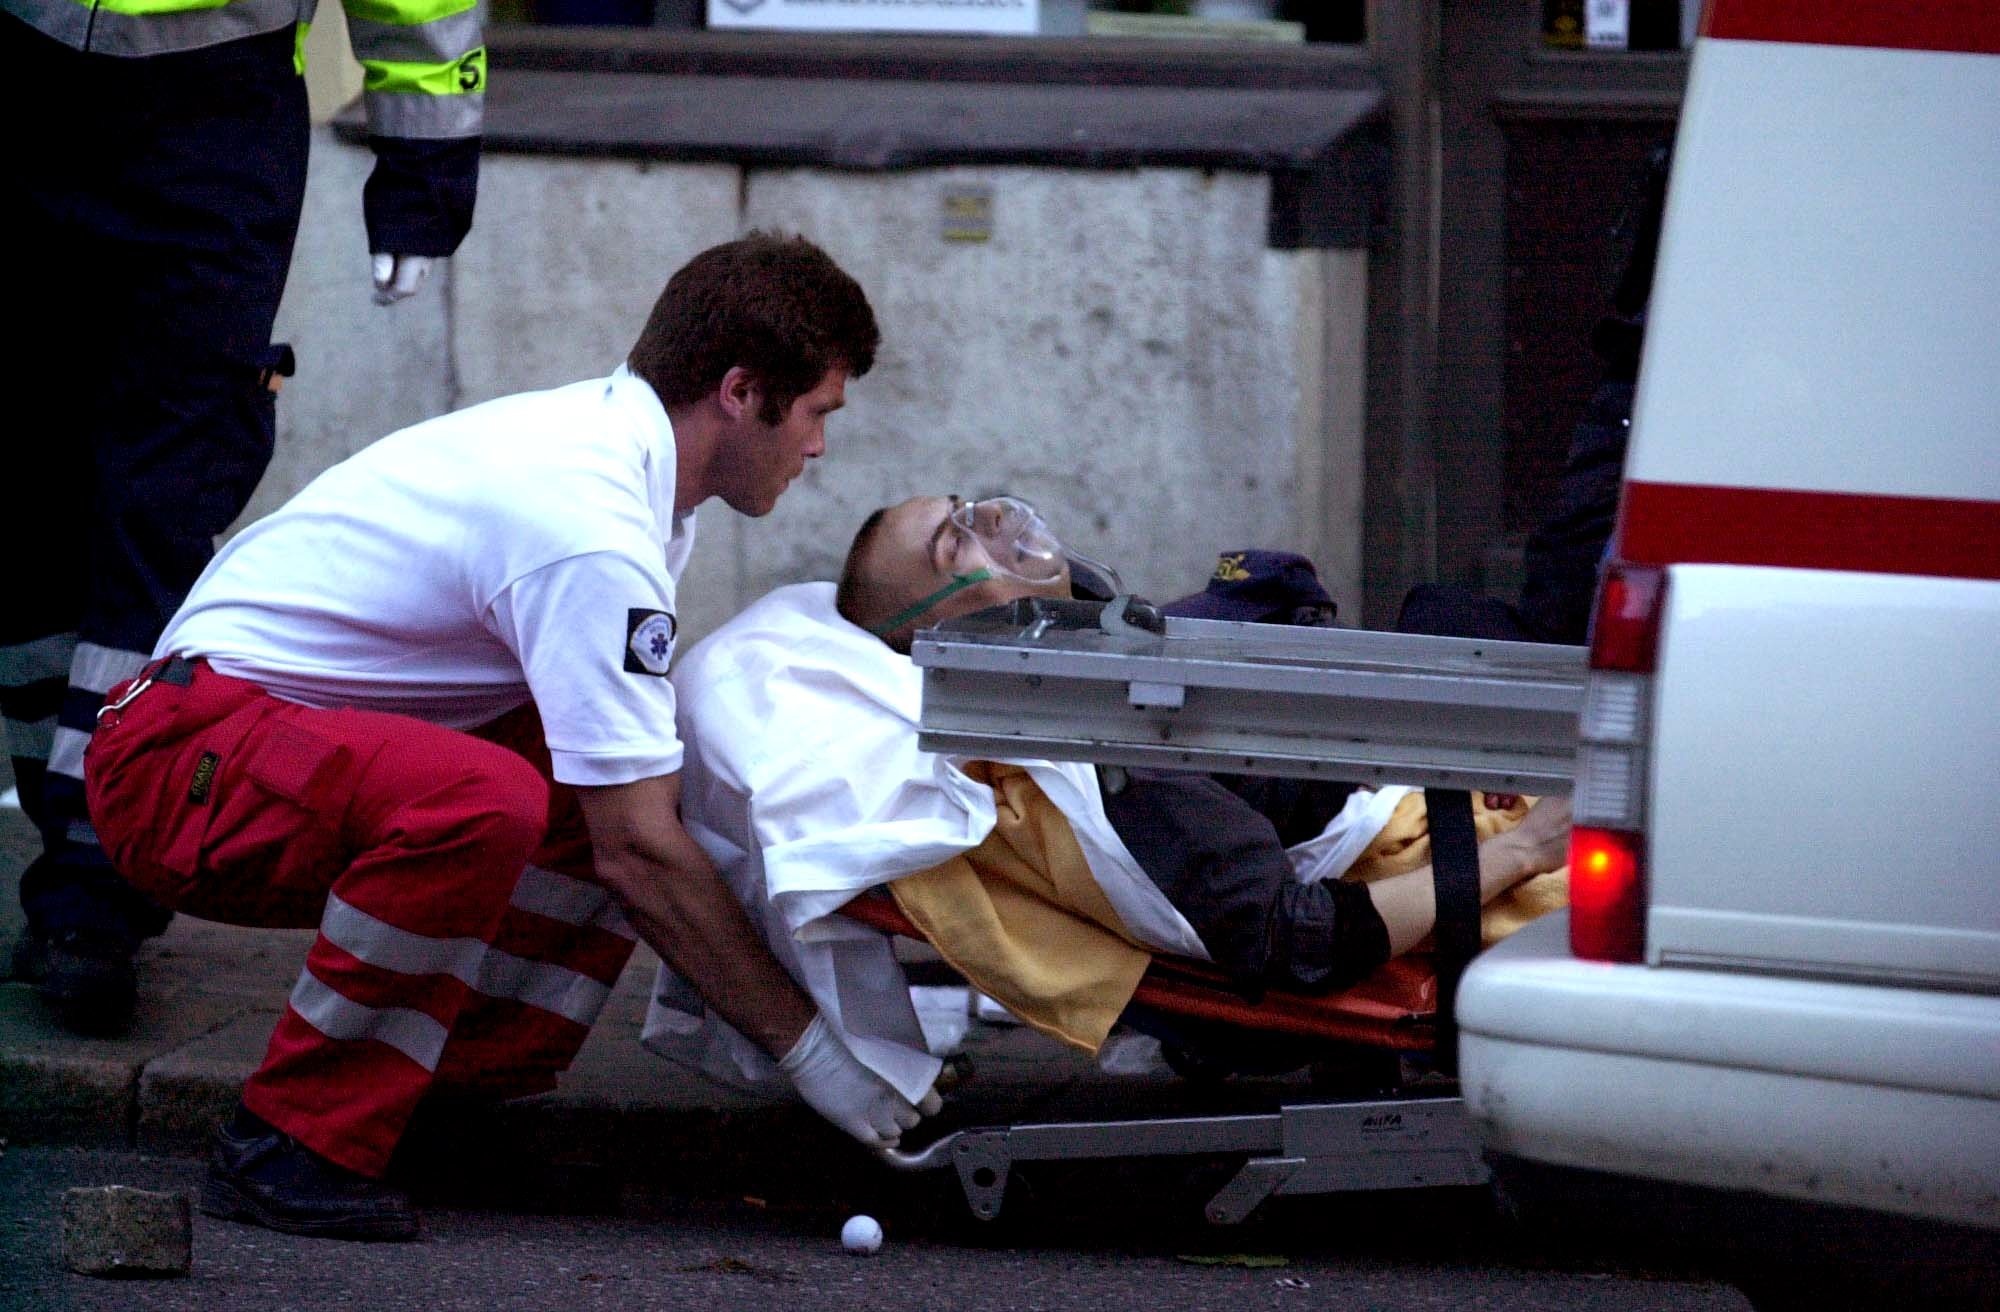 Hannes Westberg sköts av polisen. Här förs han till sjukhus med livshotande blödning. Han överlevde men förlorande sin ena njure och mjälten.